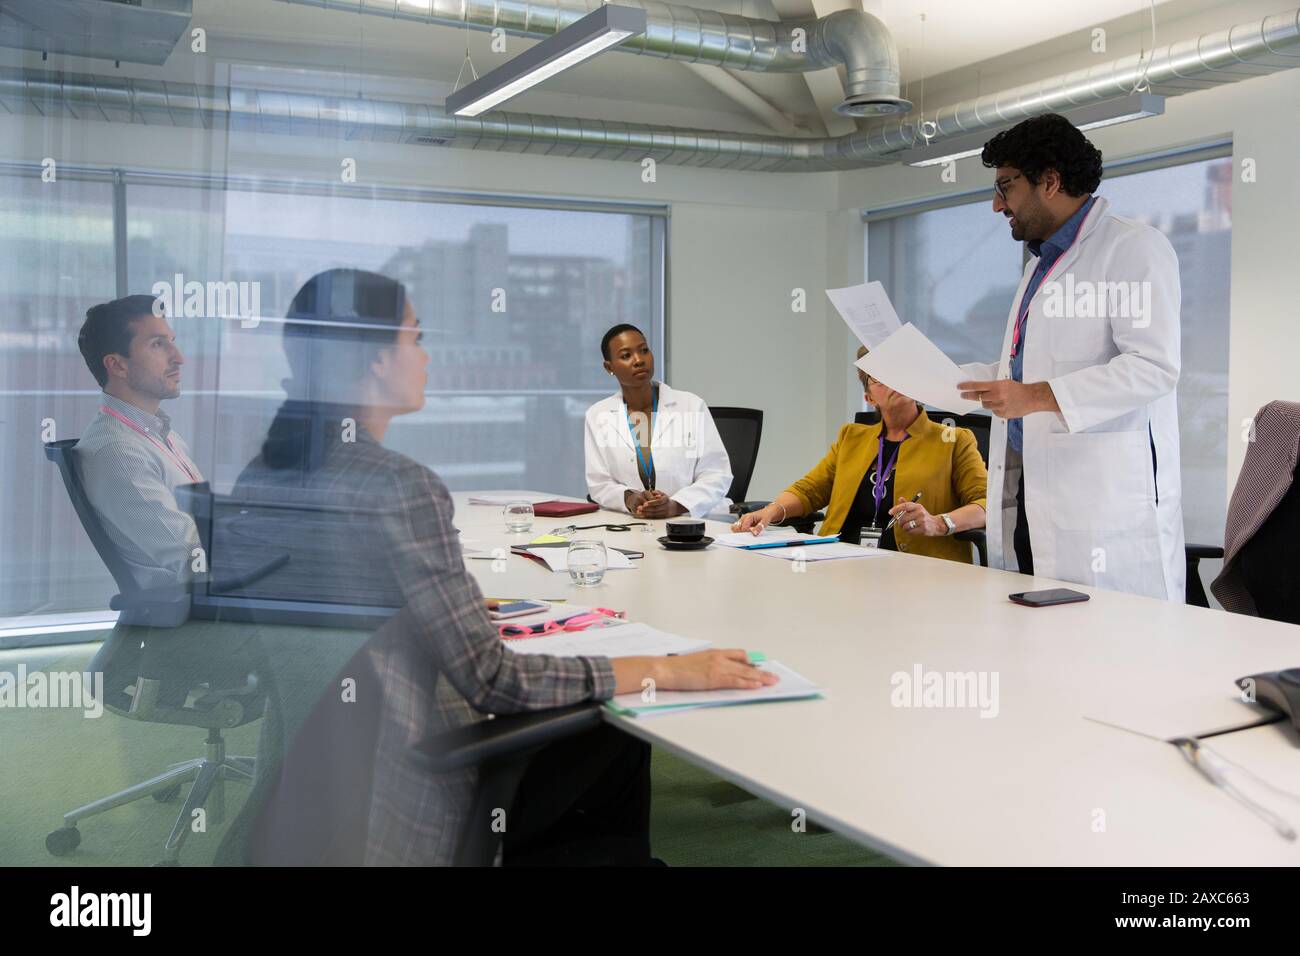 Männlicher Arzt führt das Meeting im Konferenzraum durch Stockfoto